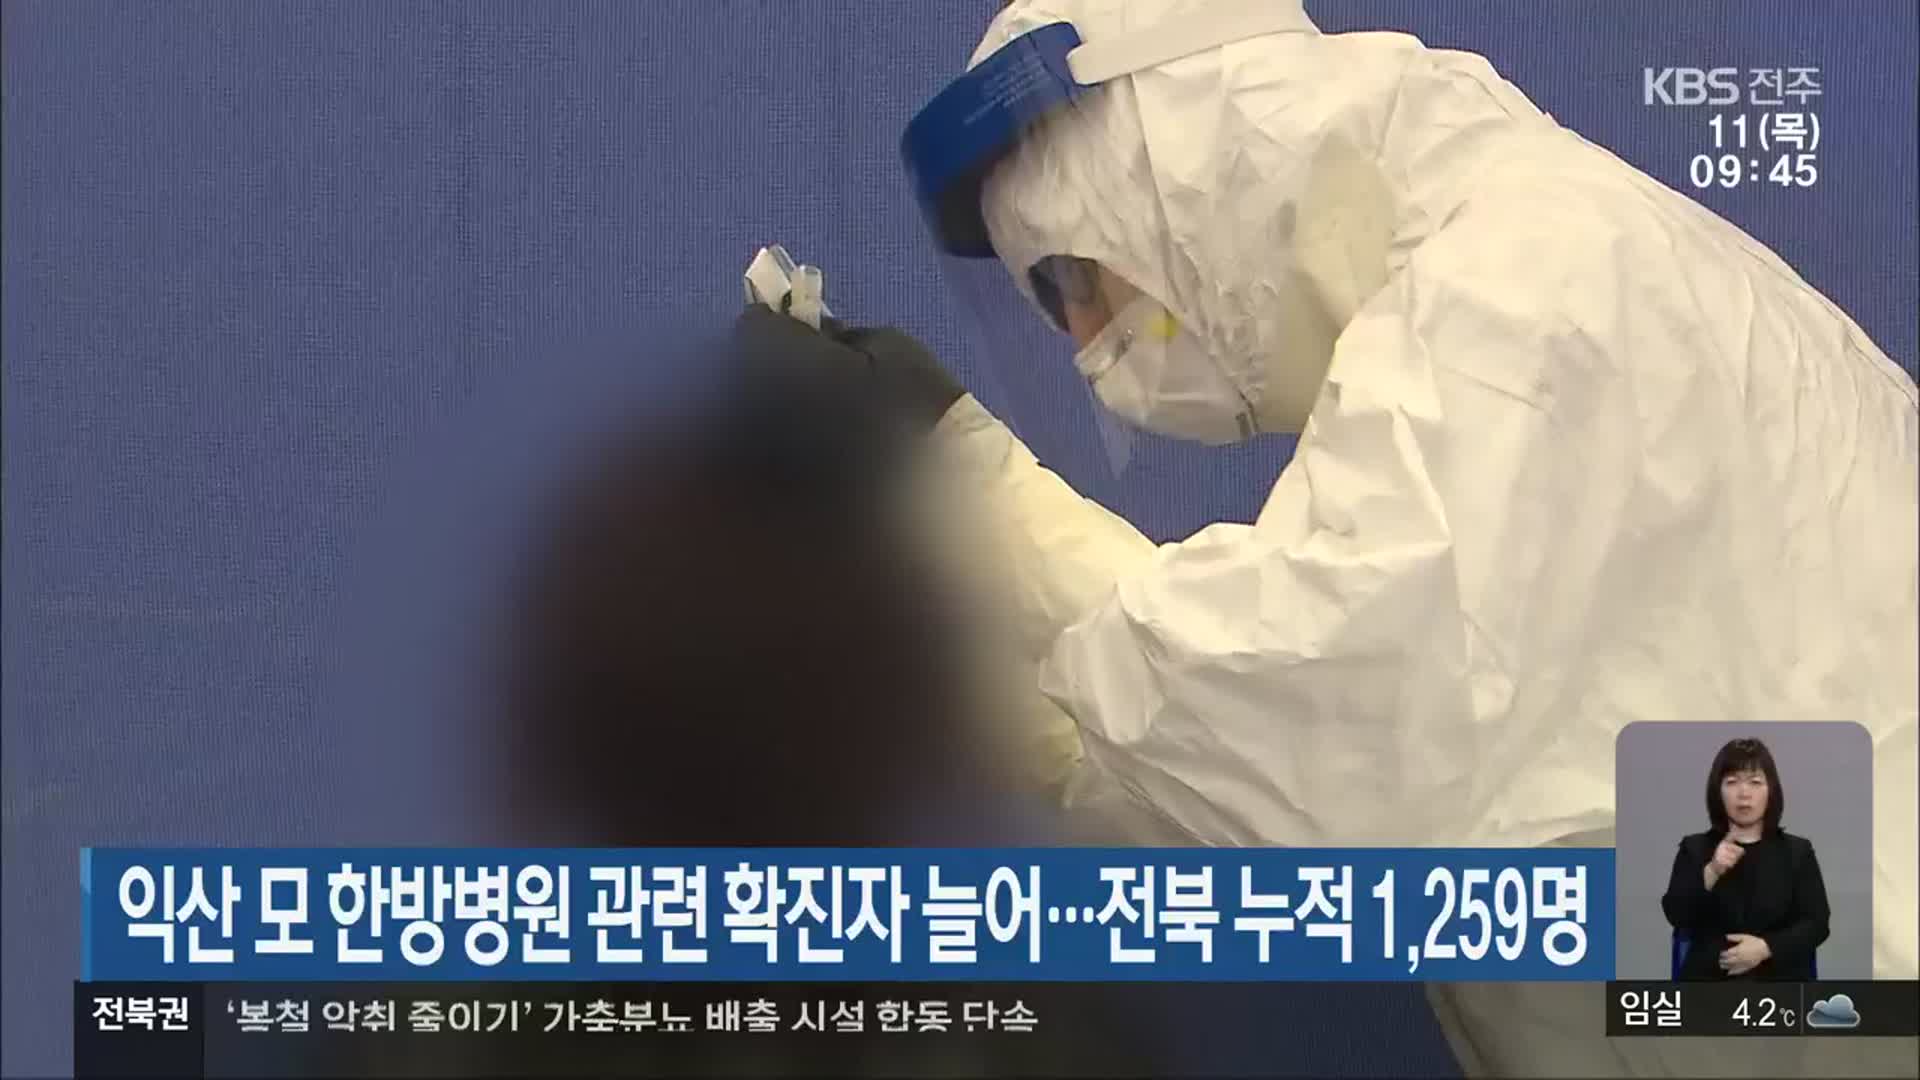 익산 모 한방병원 관련 확진자 늘어…전북 누적 1,259명